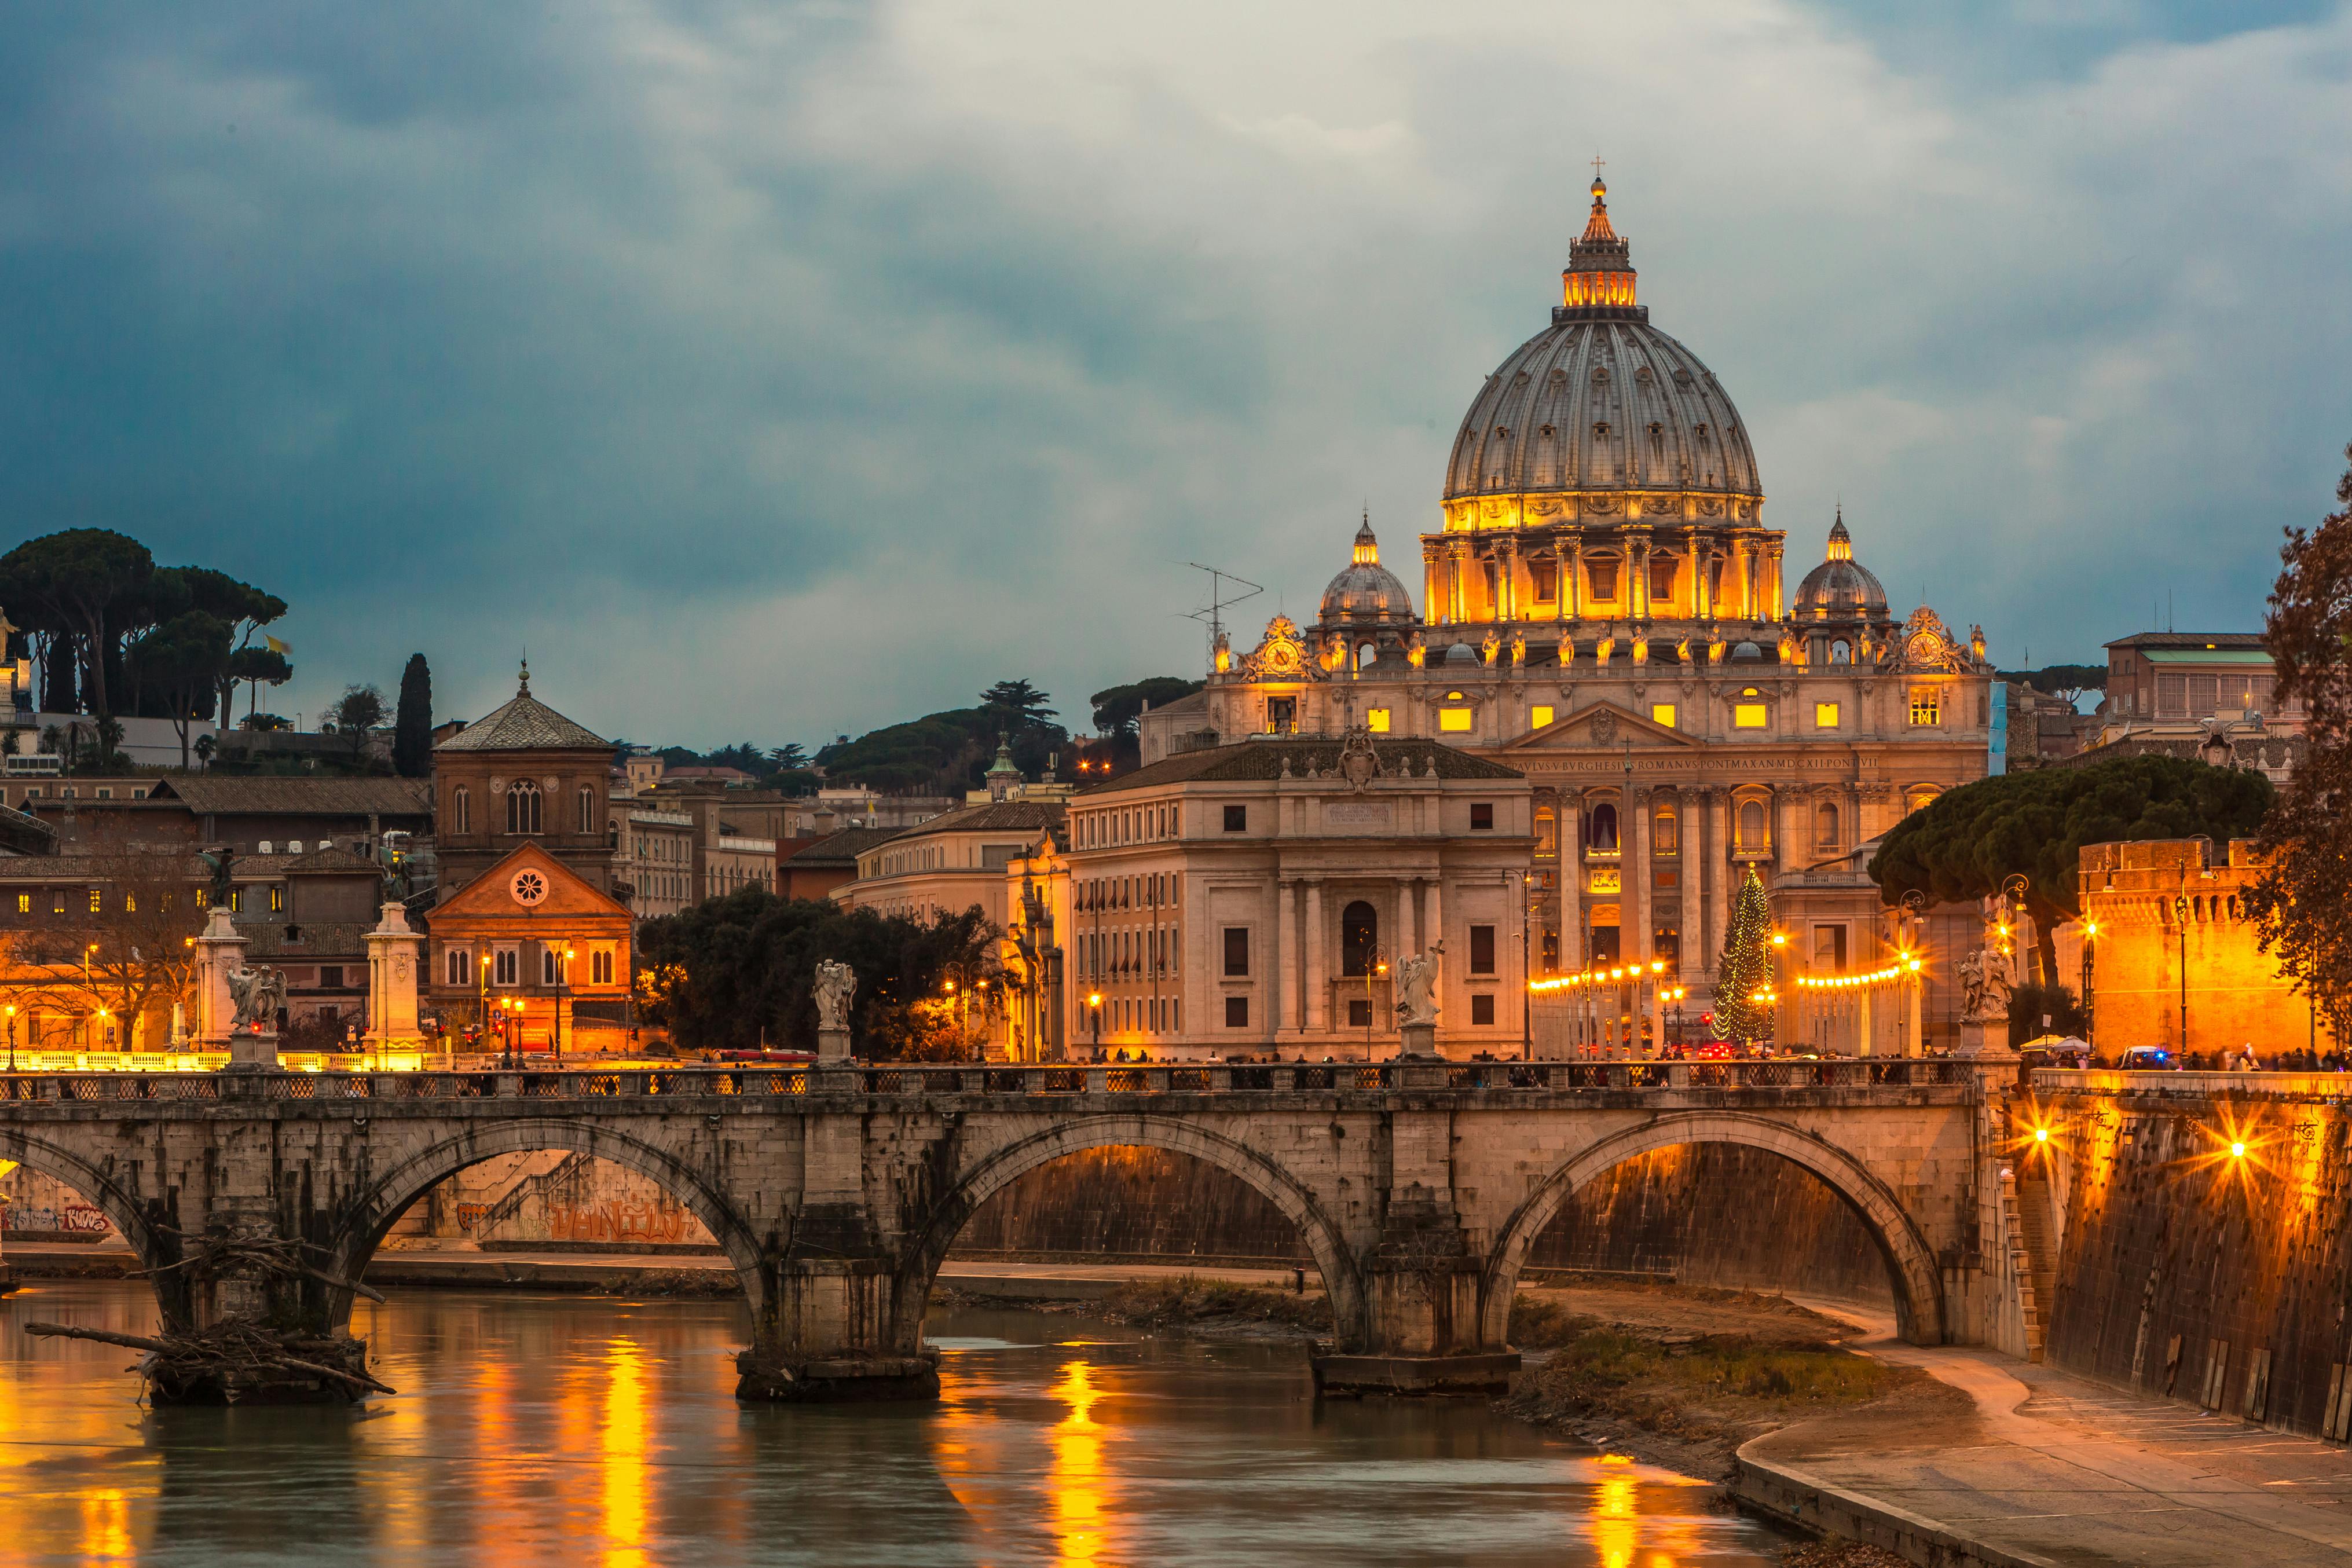 Rejsetips: Oplev Rom i december og kom i julestemning med smukke julelys